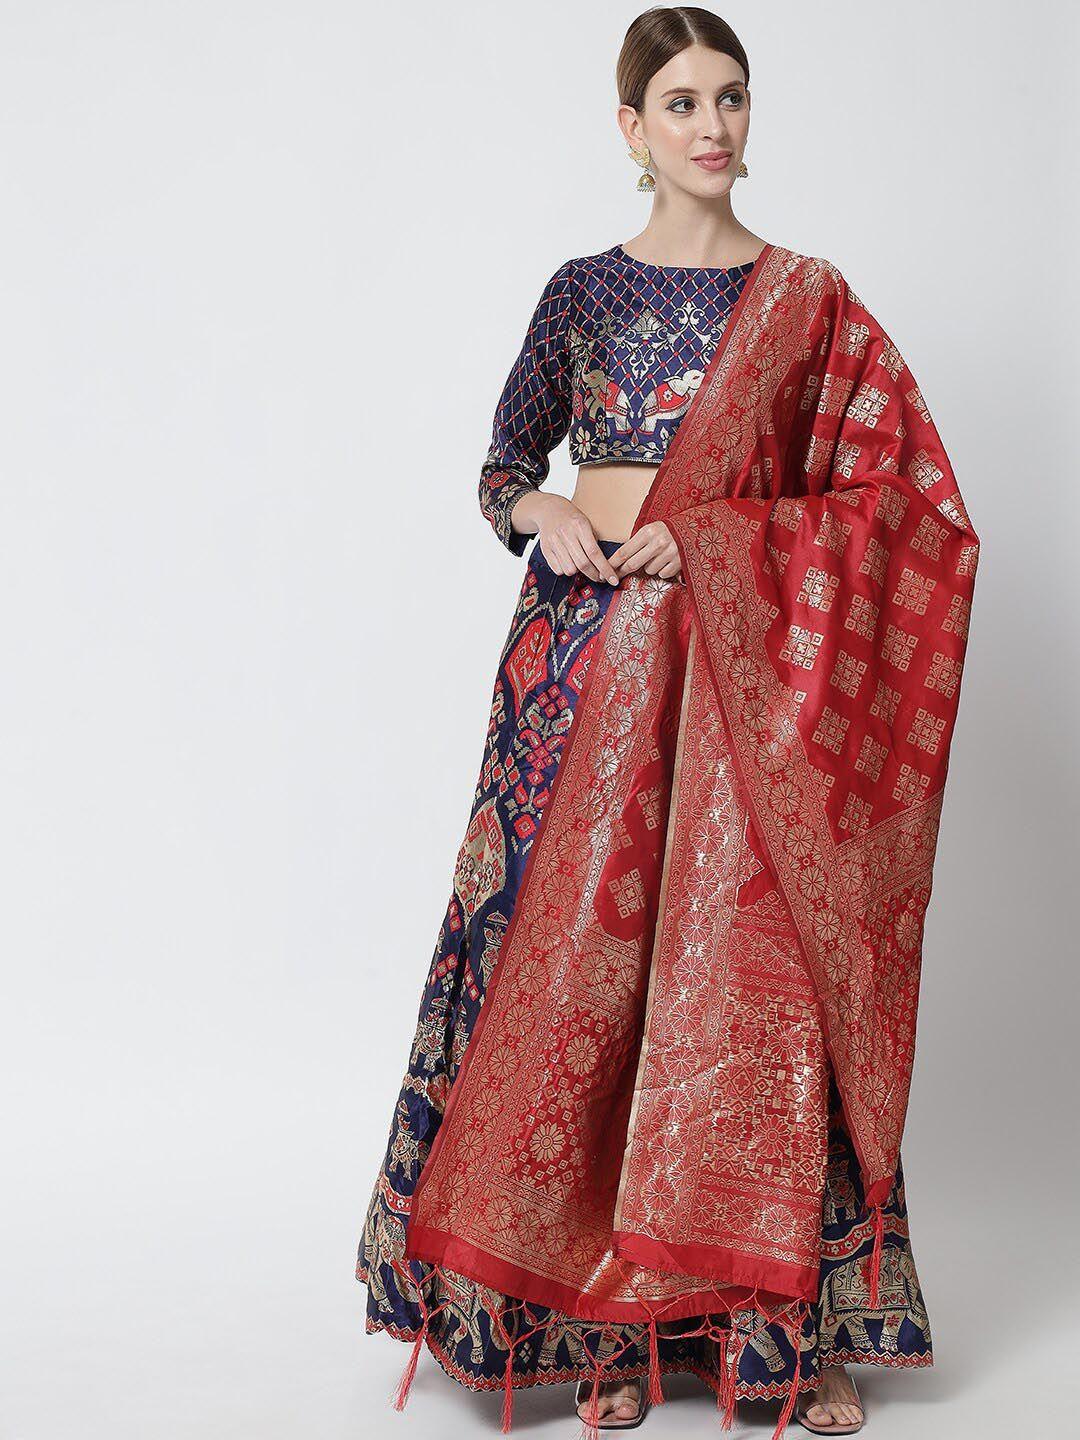 mitera semi-stitched lehenga & unstitched blouse with dupatta